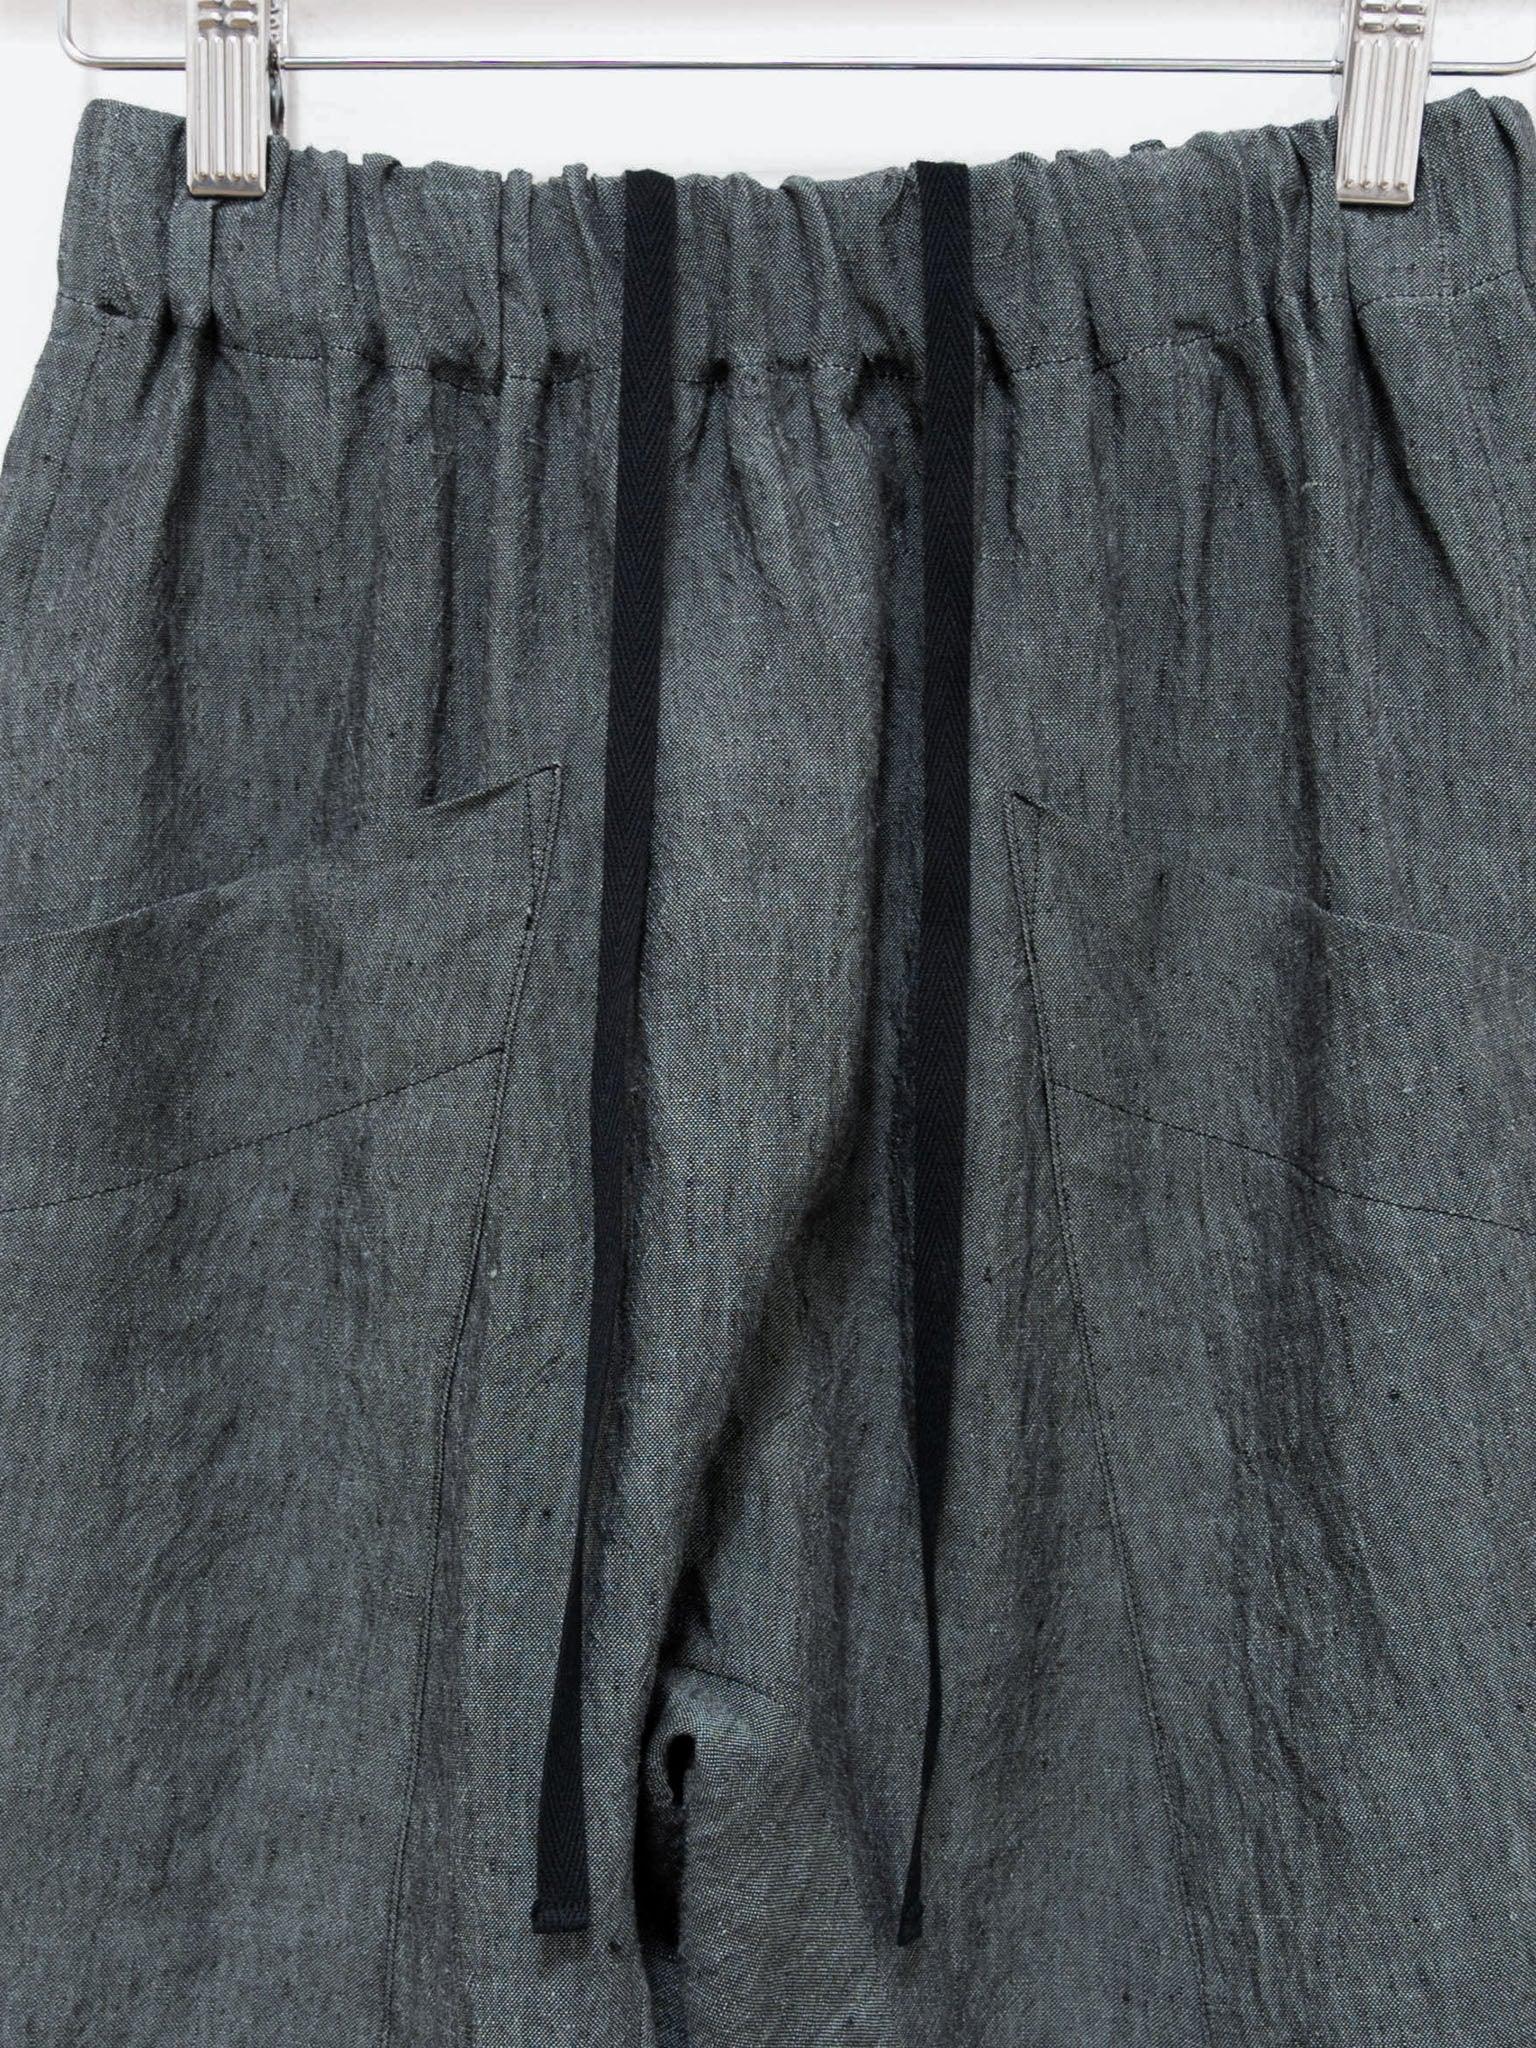 Namu Shop - Toogood The Perfumer Trouser - Blue Slate Laundered Linen